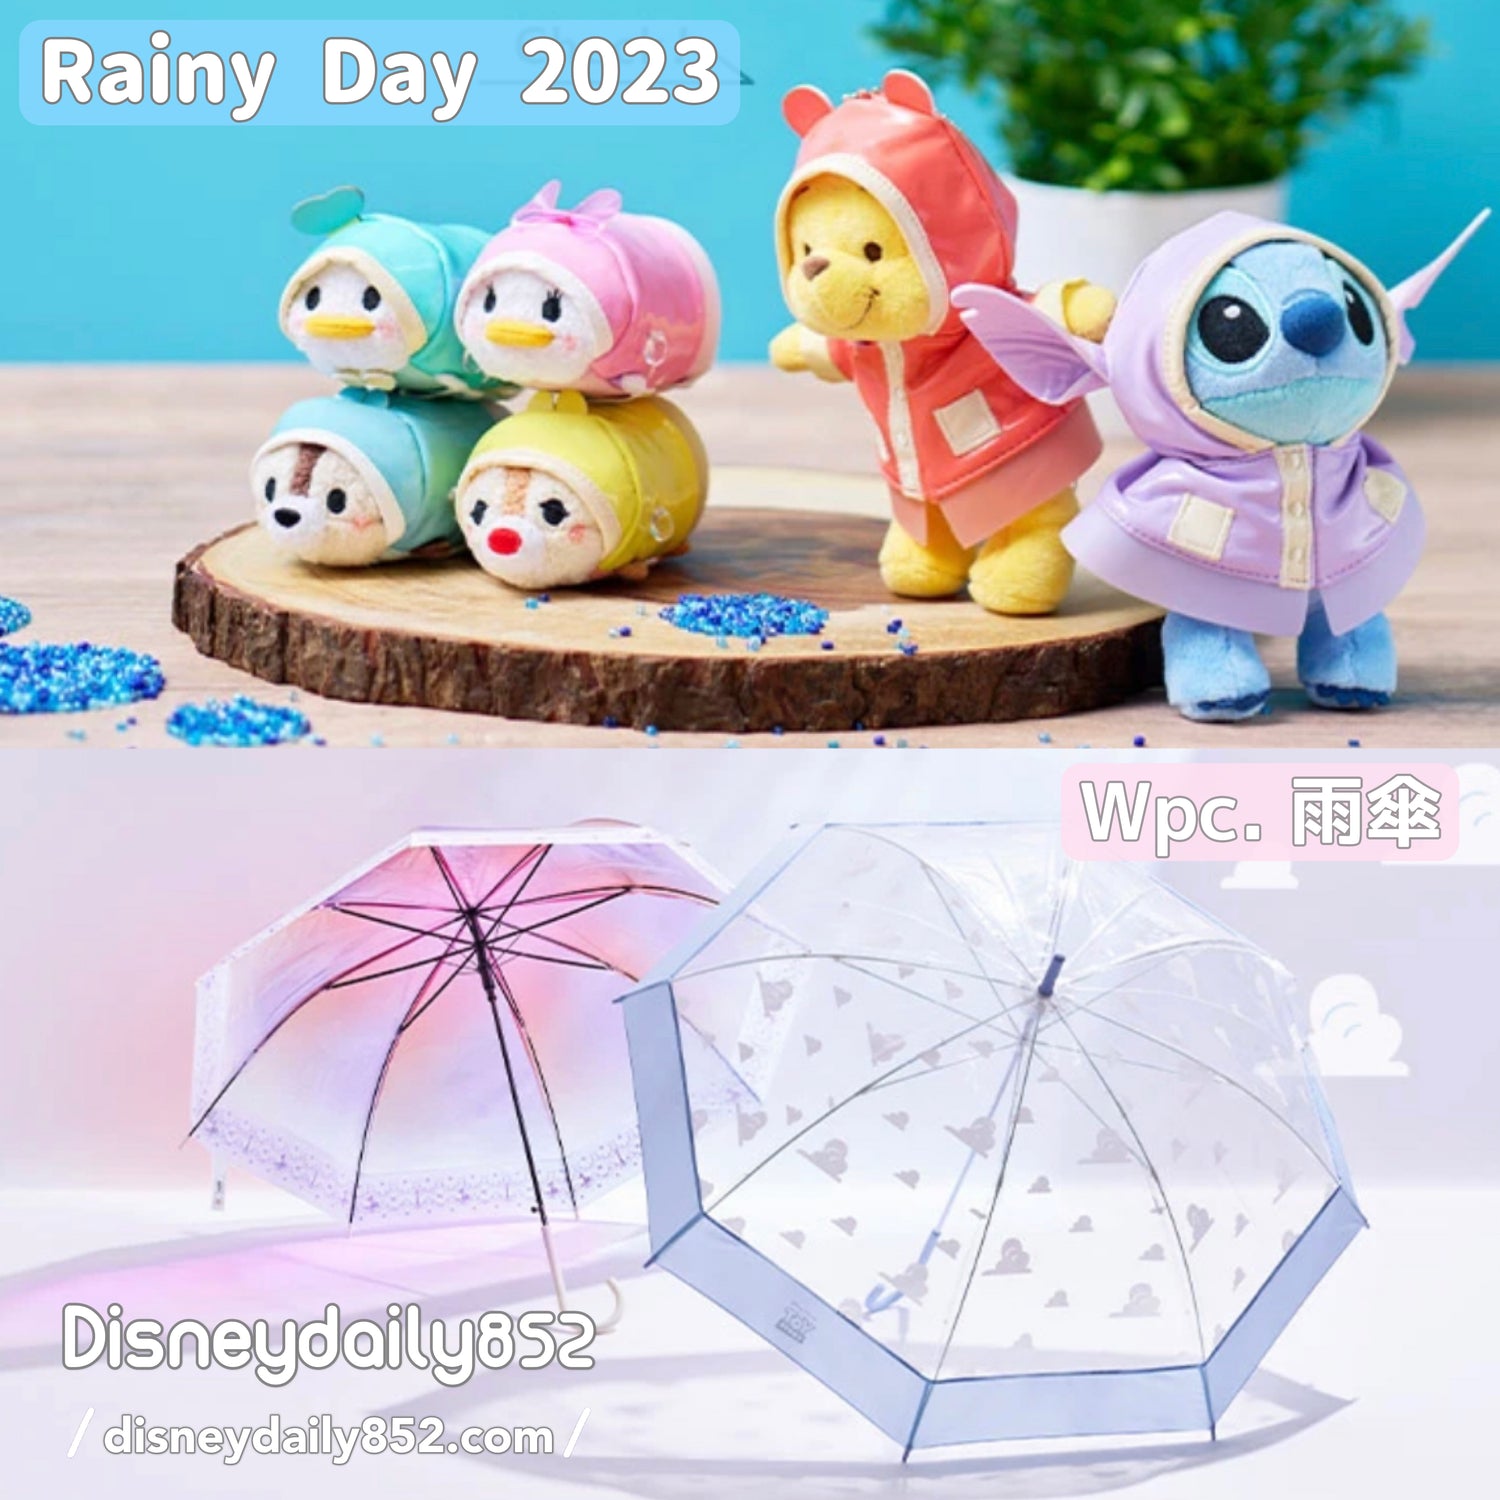 Rainy Day 2023